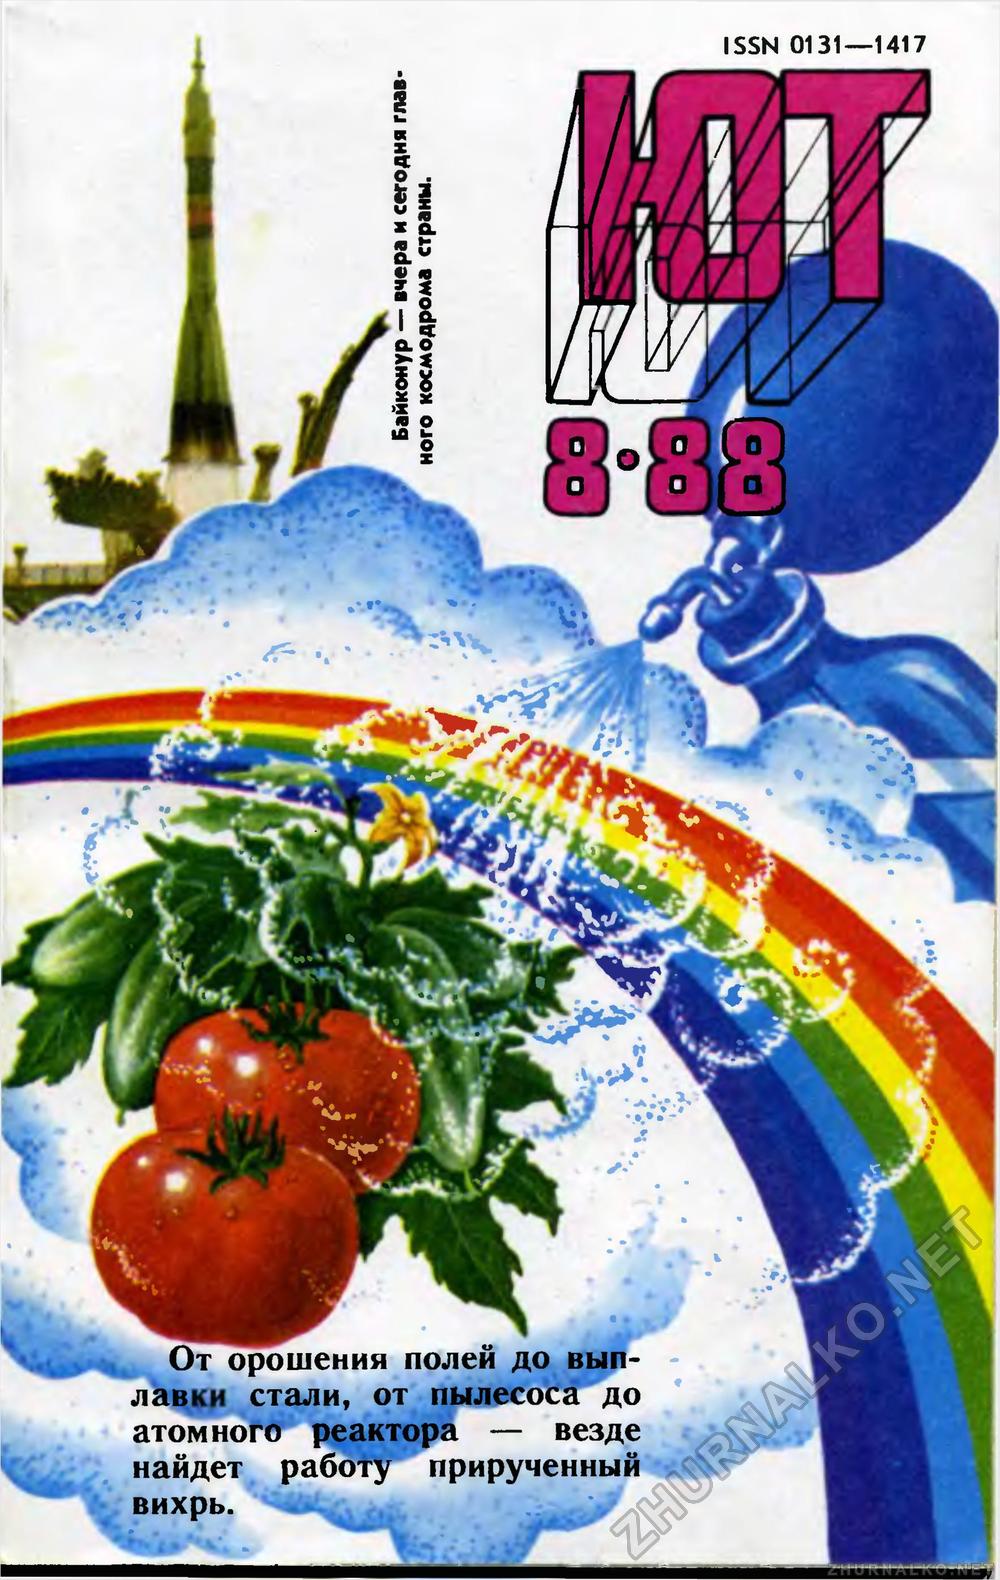   1988-08,  1